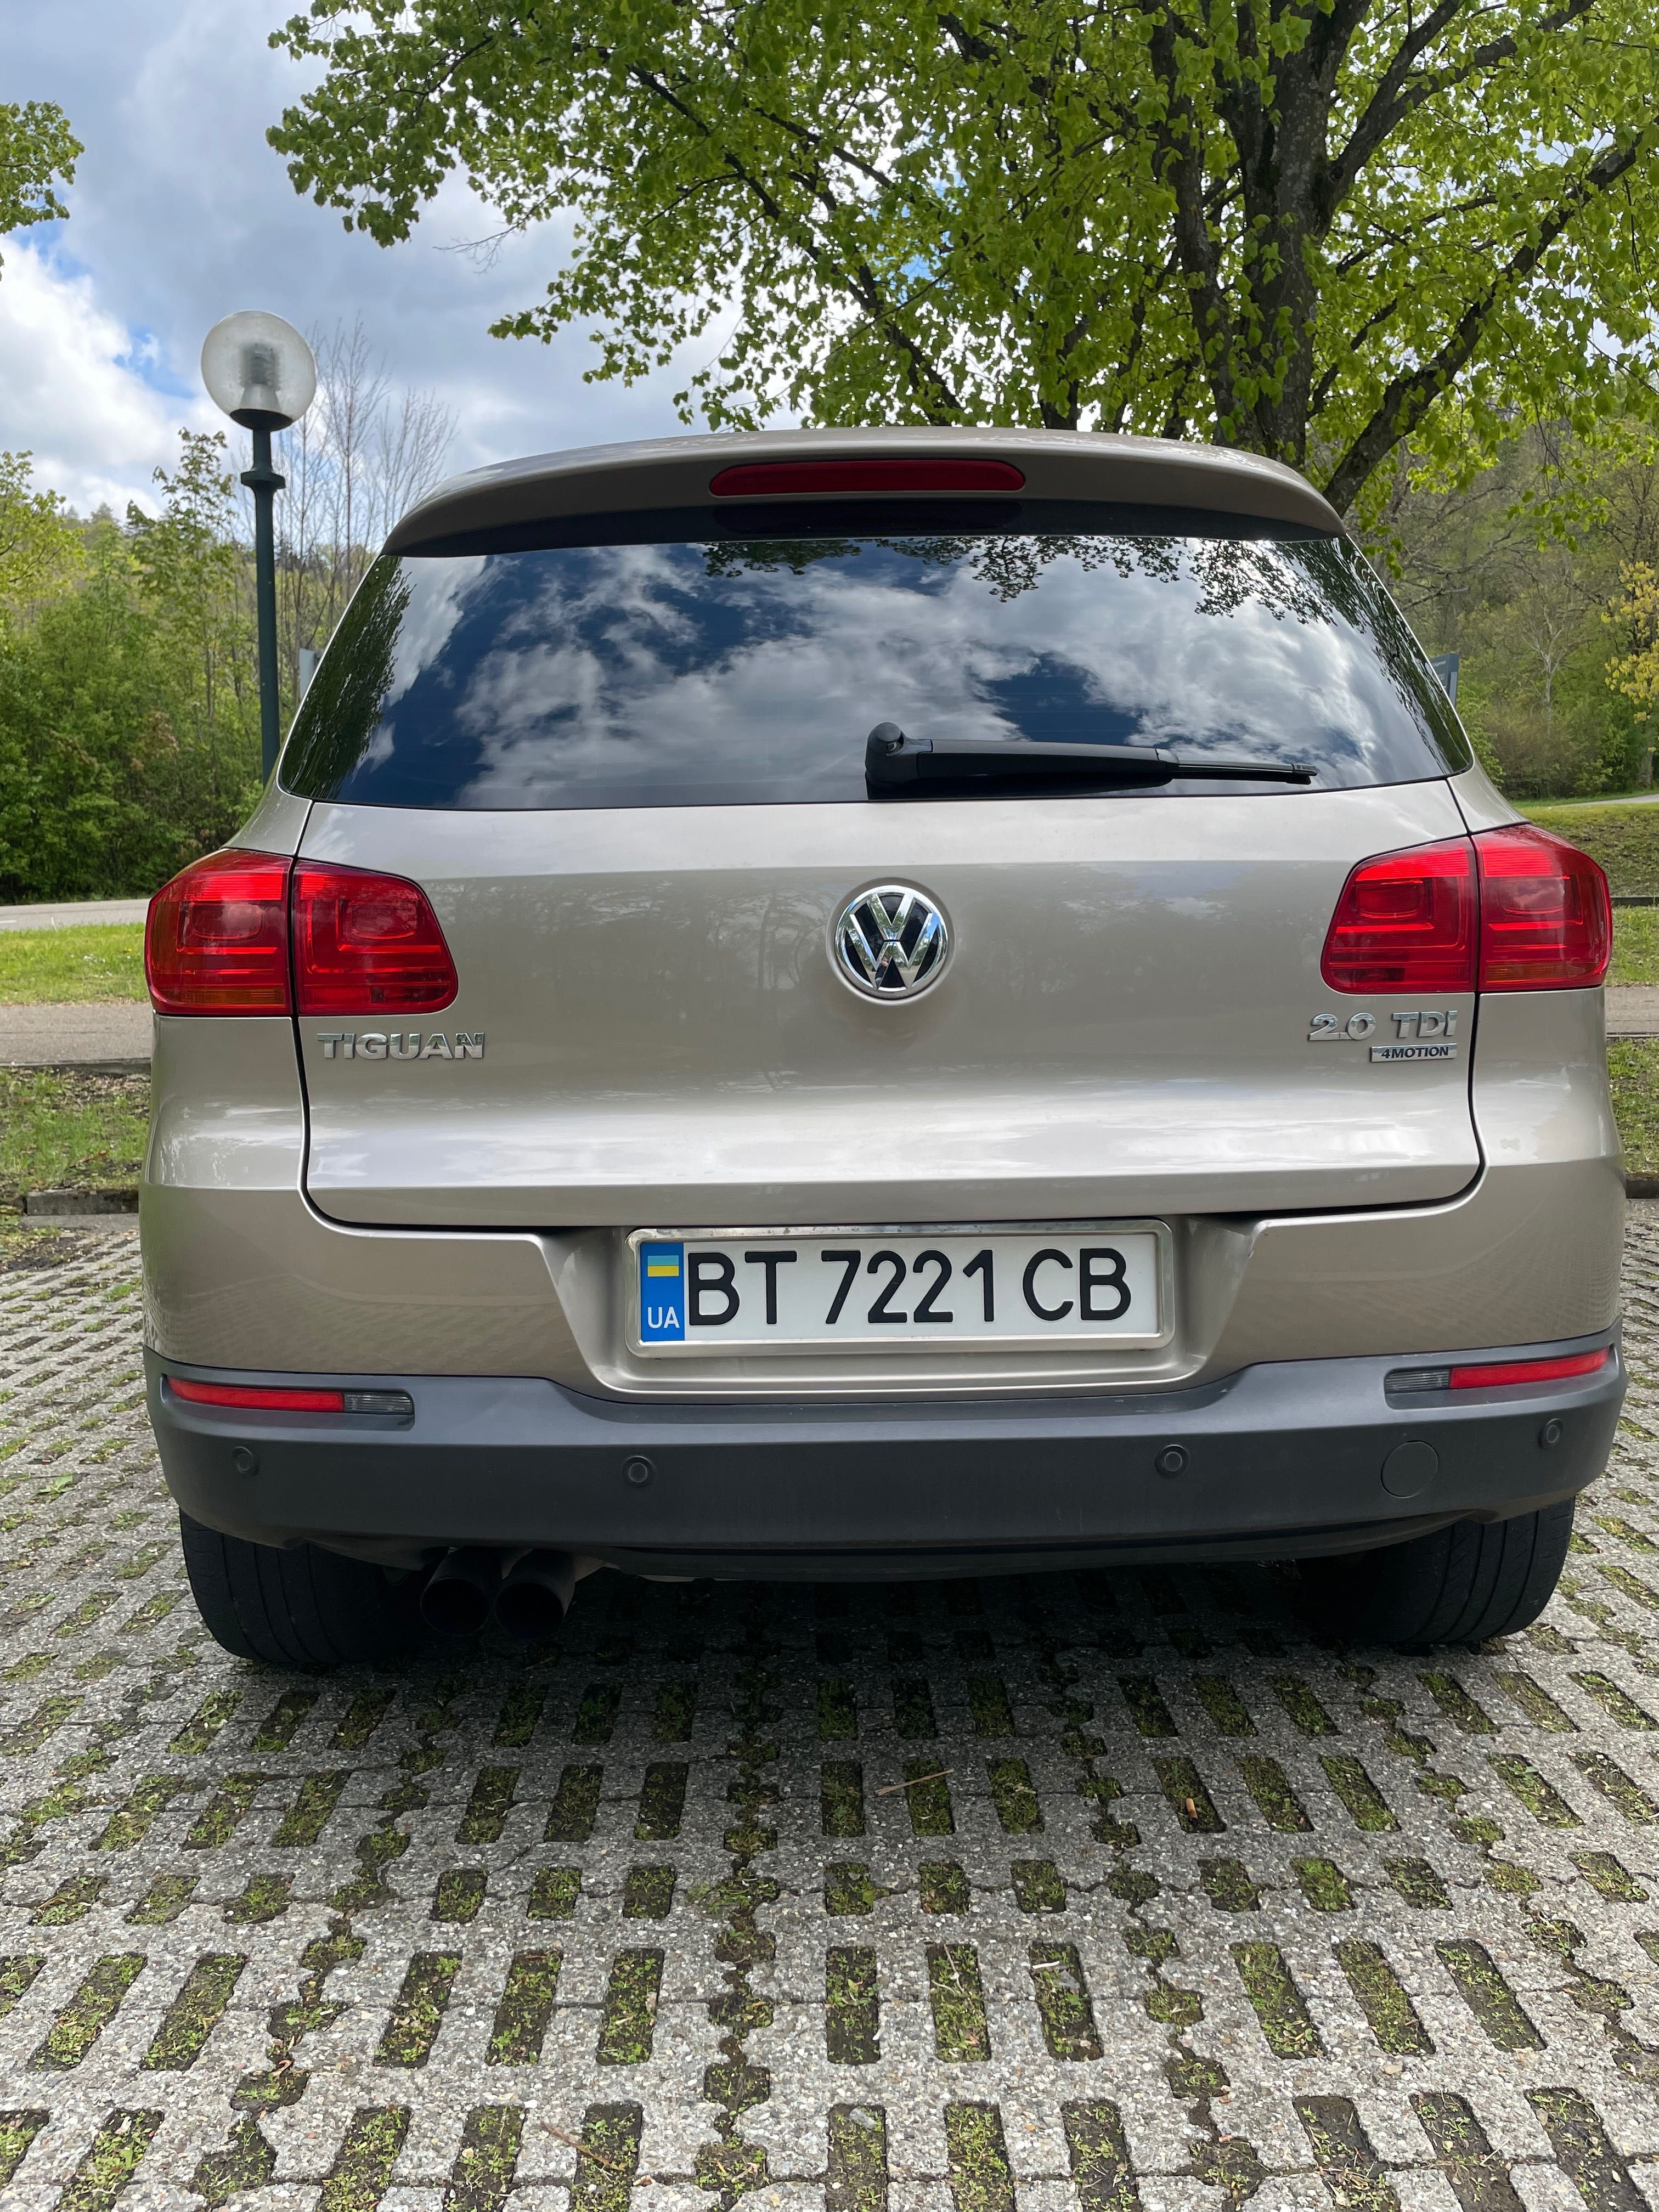 VW Tiguan 2013 4 Motion 2.0 TDI